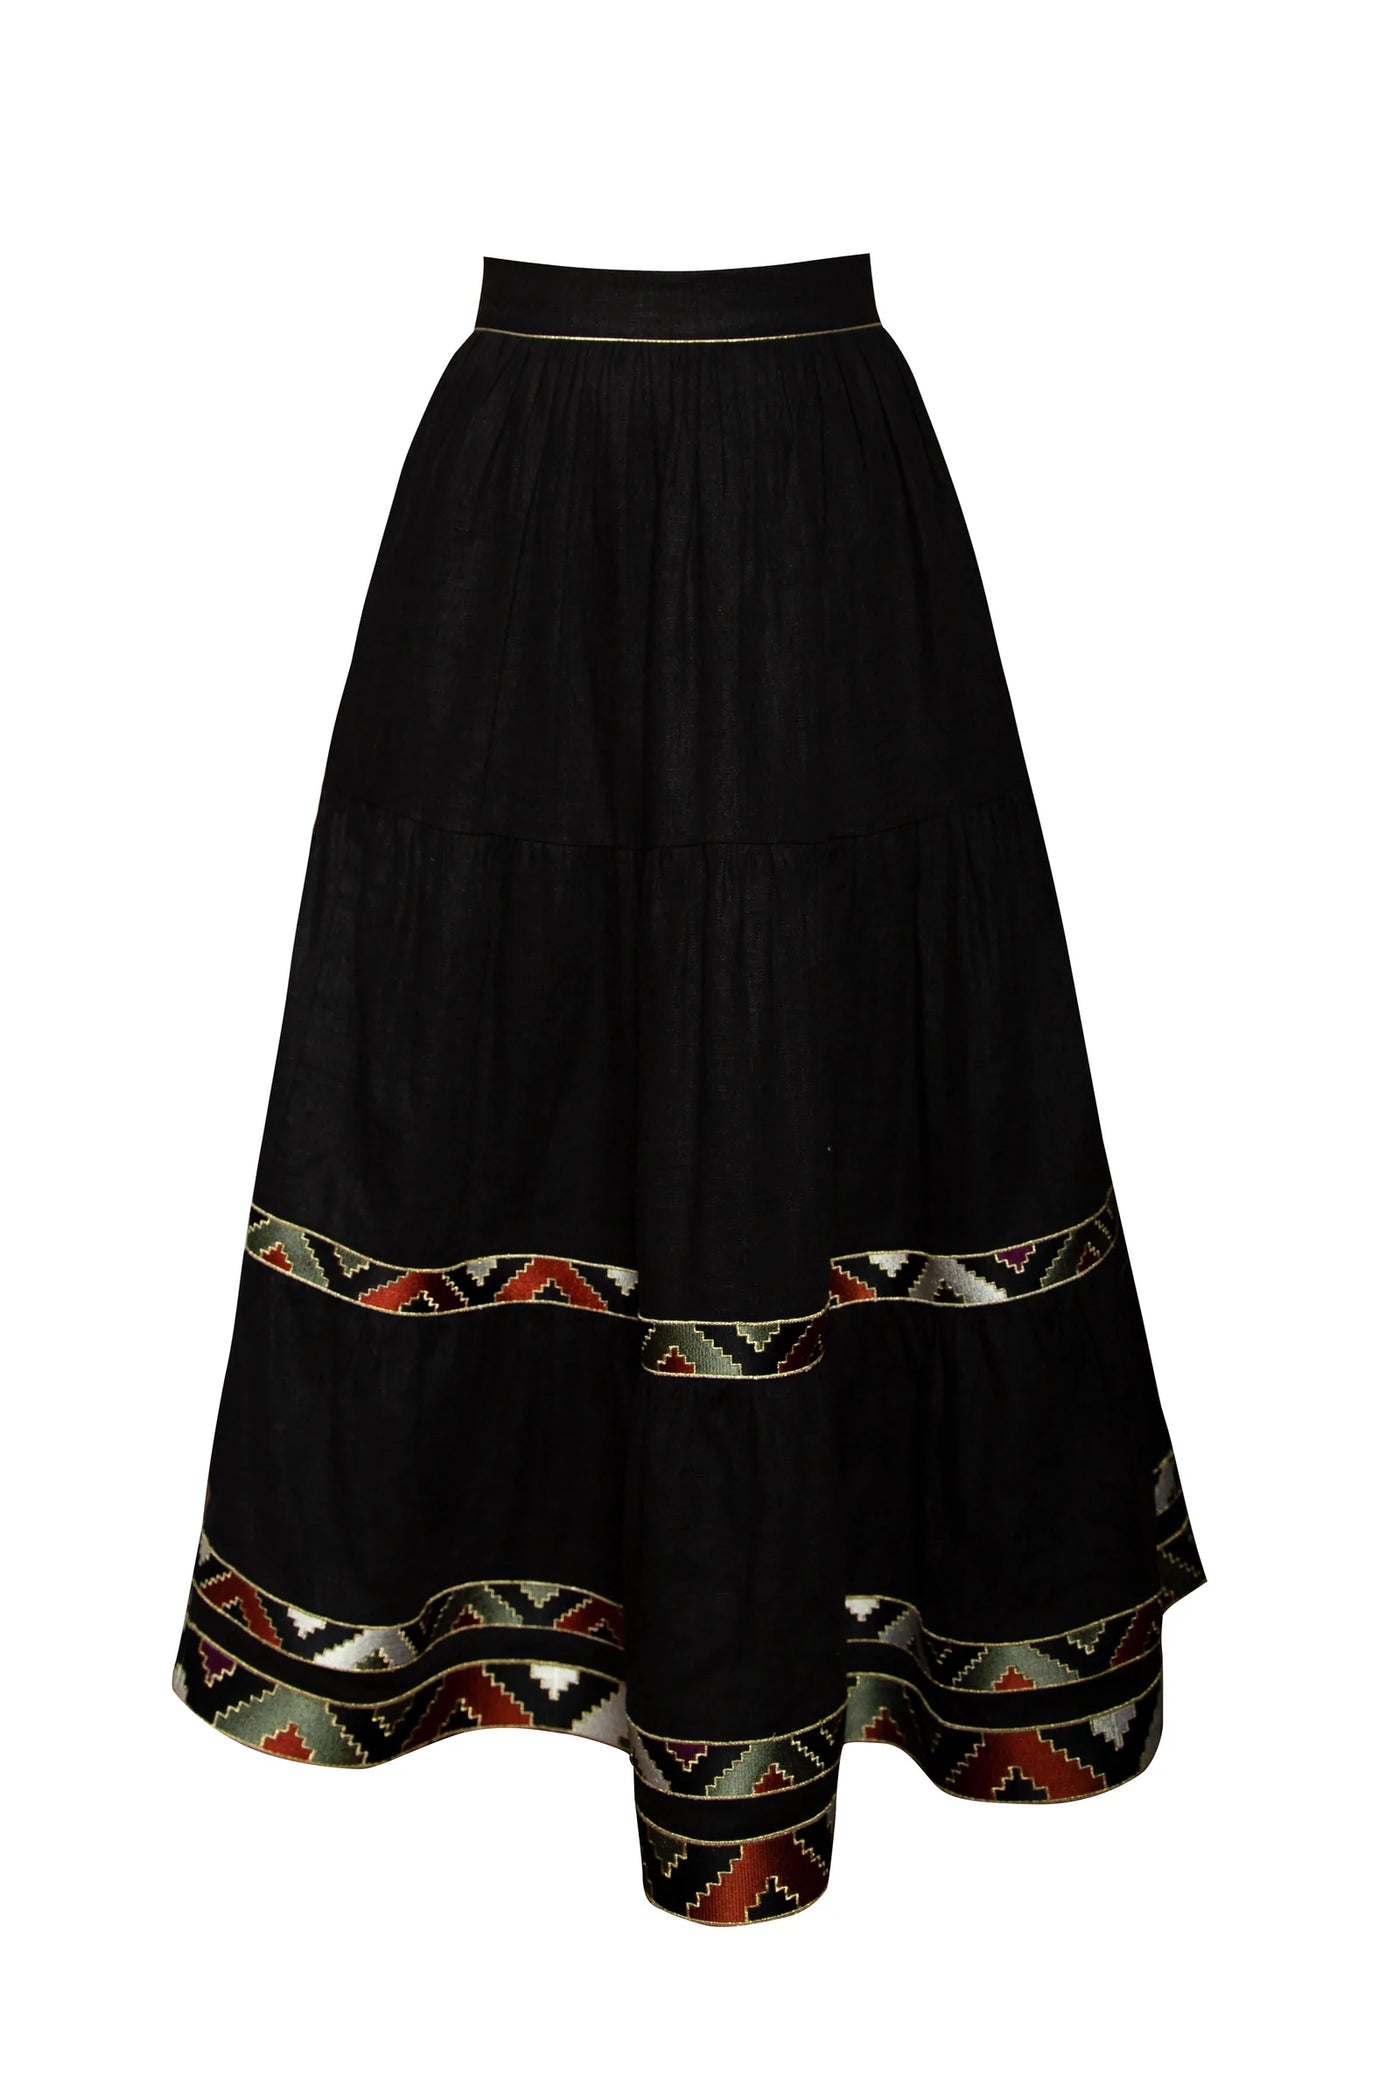 Gilara Skirt